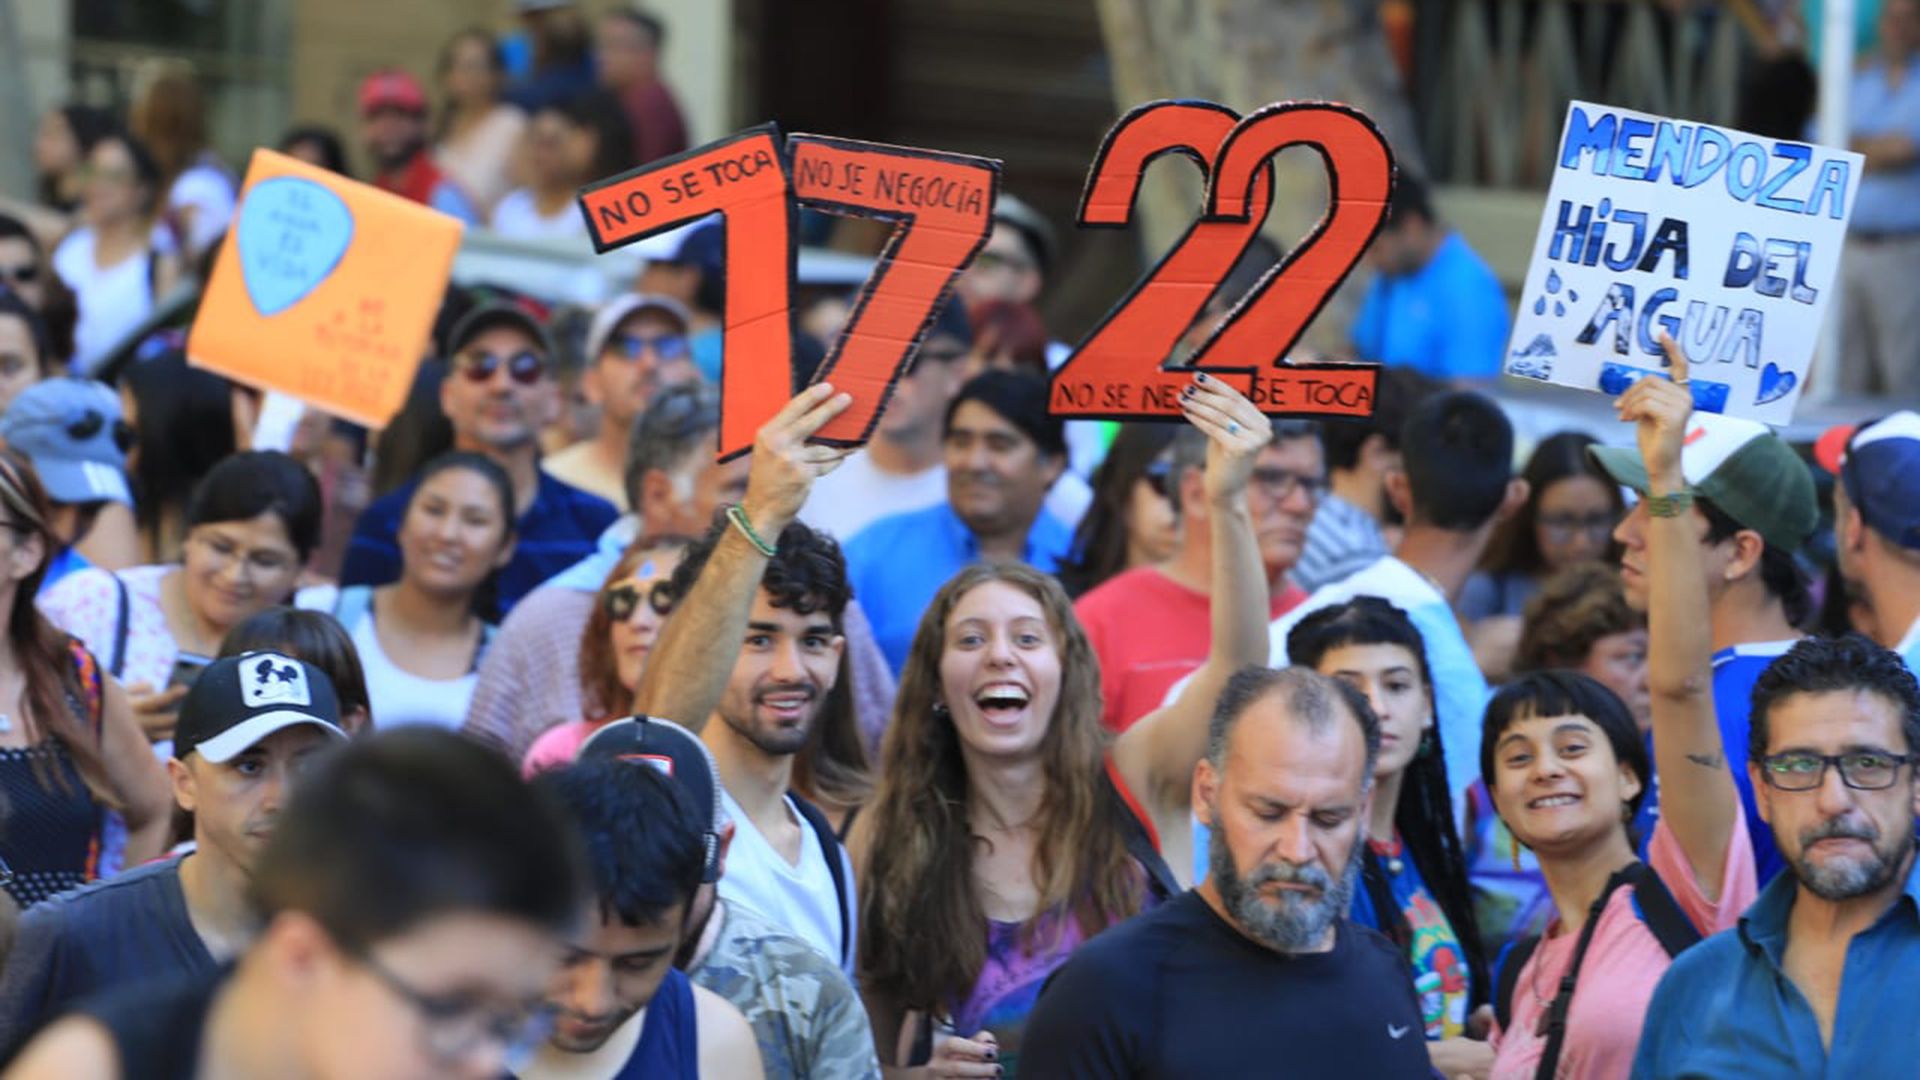 Los manifestantes le reclaman al gobernador Rodolfo Suárez que vete las modificaciones a la ley 7722